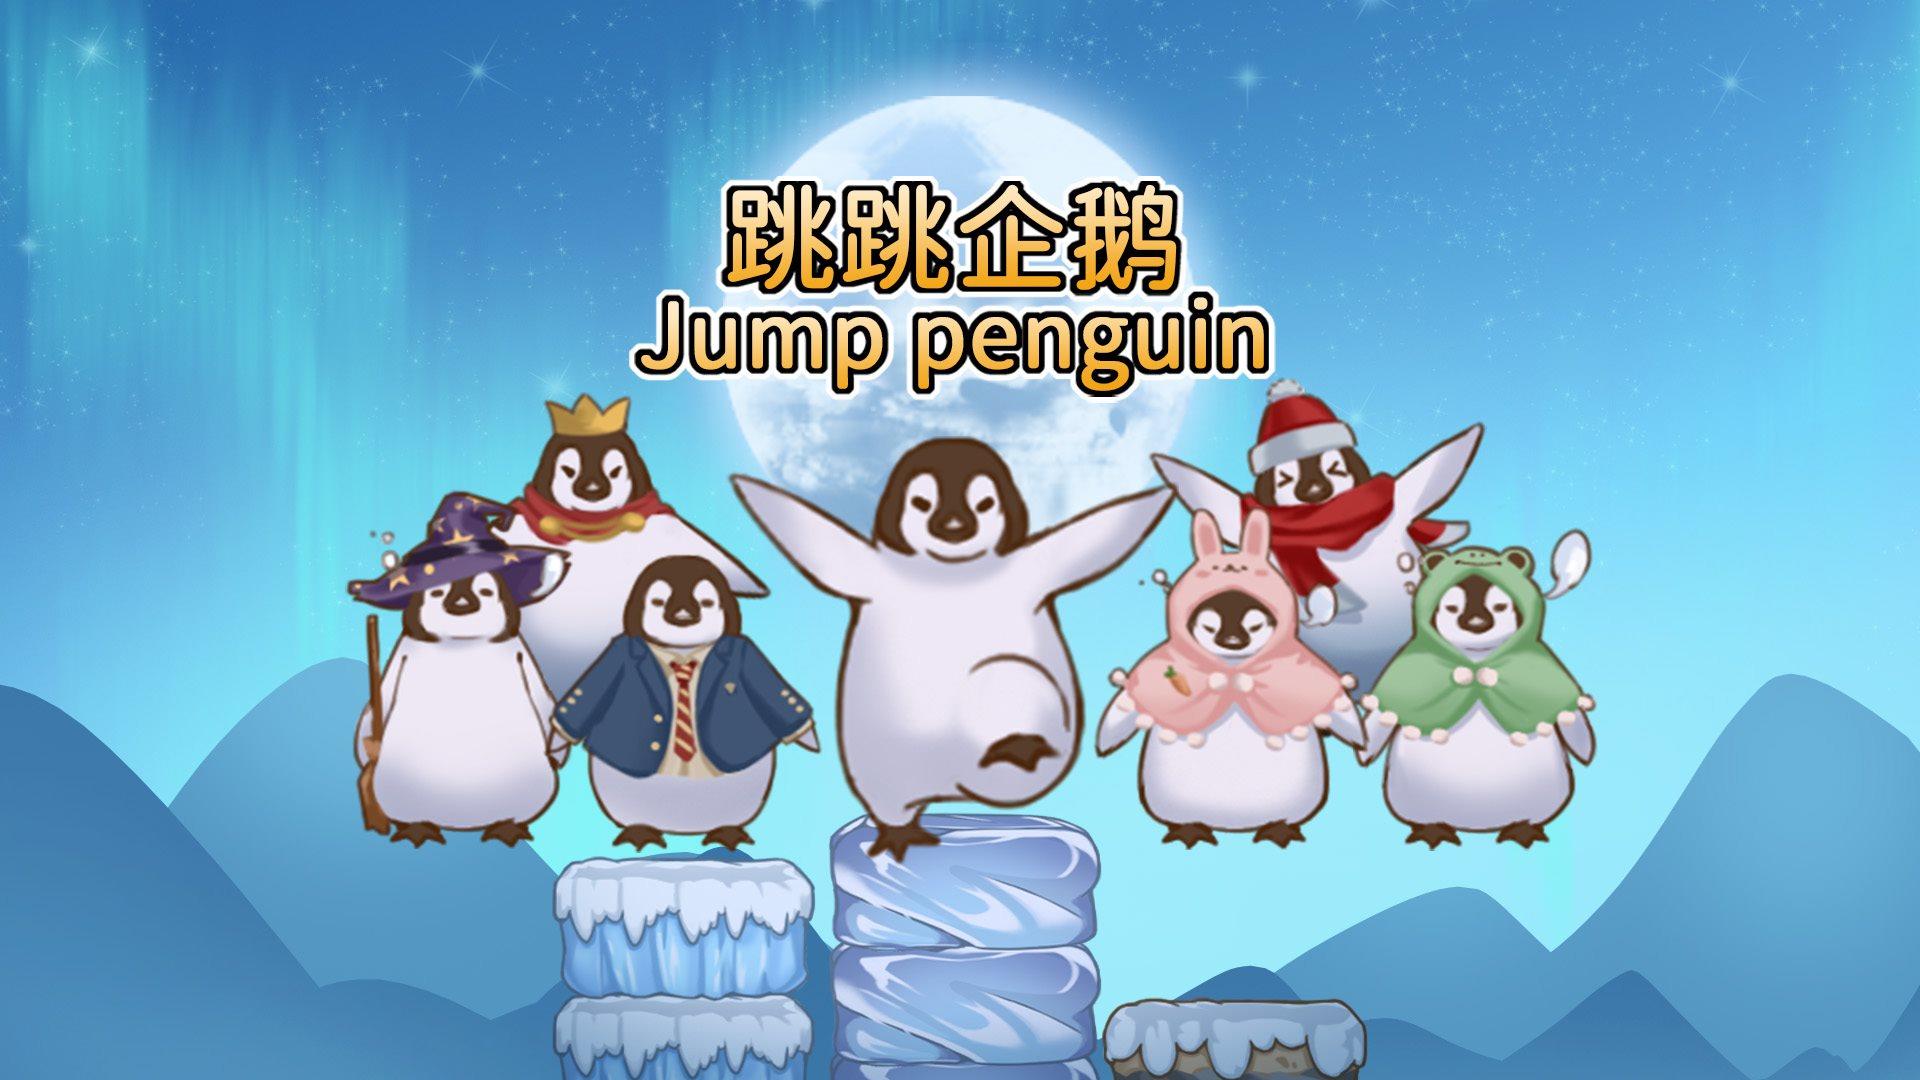 Banner of tumatalbog na penguin 0.1.2021.0108.3